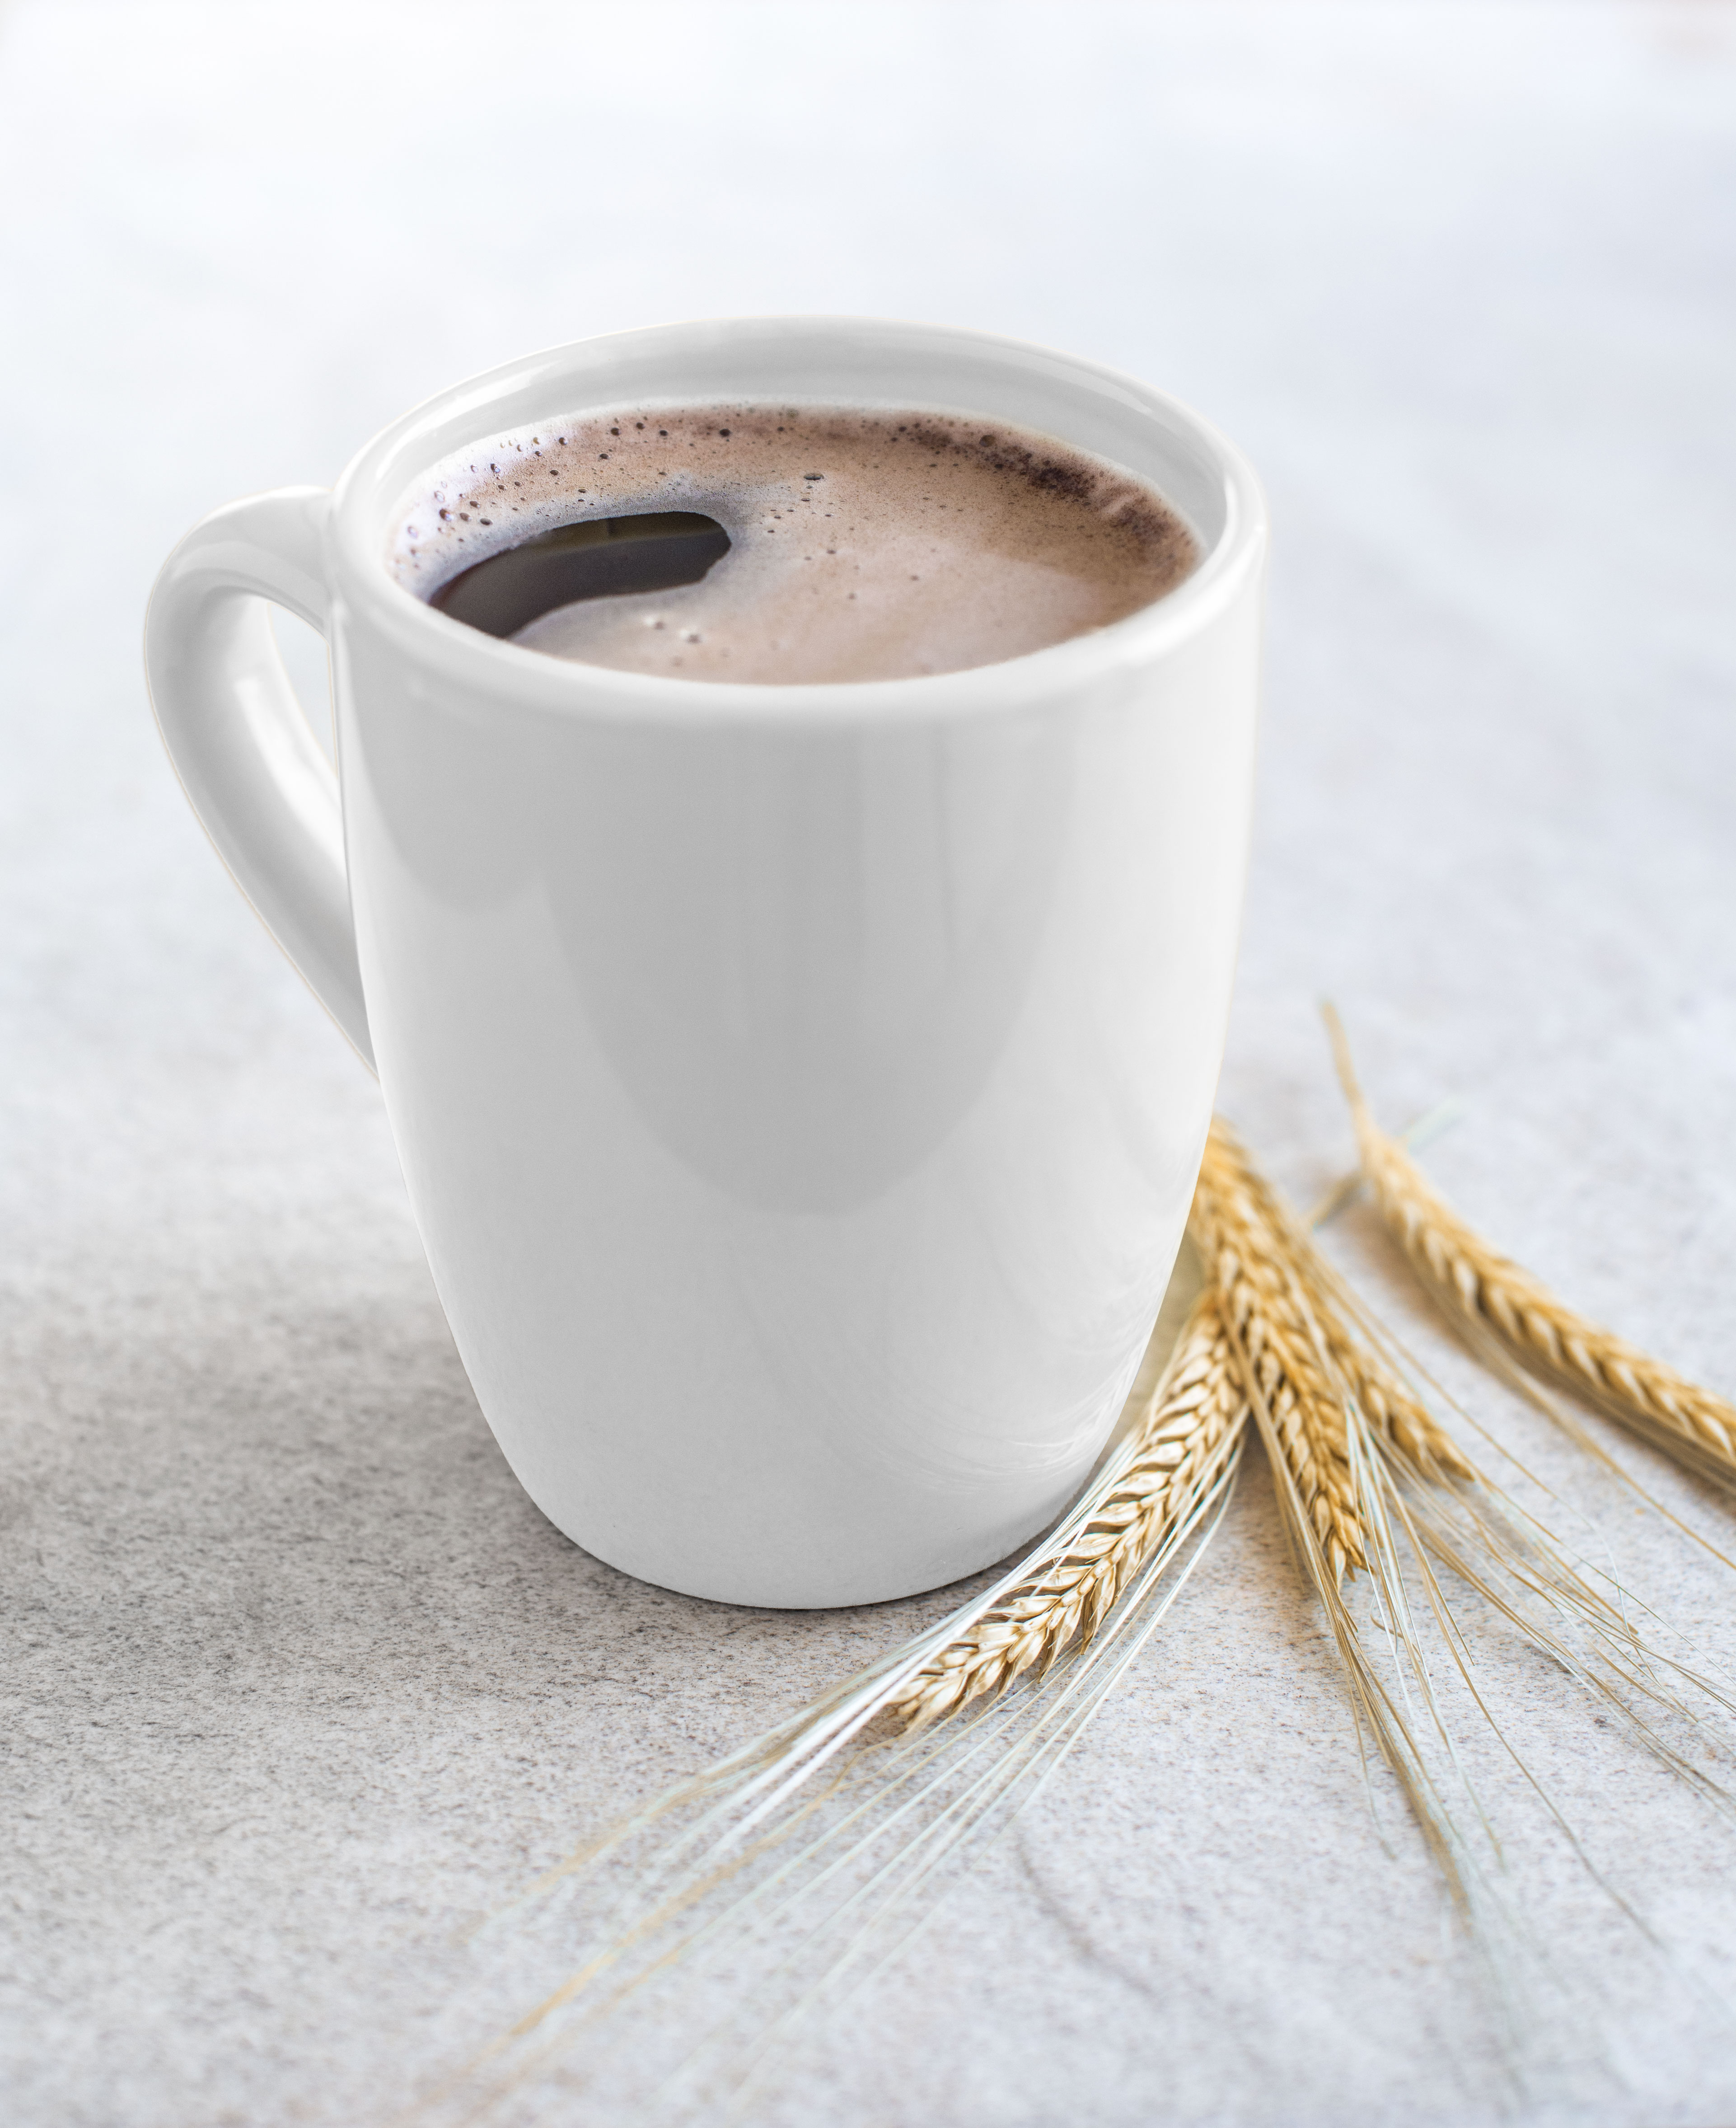 Wzmocnij swoją odporność w prosty sposób – pij kawę zbożową z magnezem!